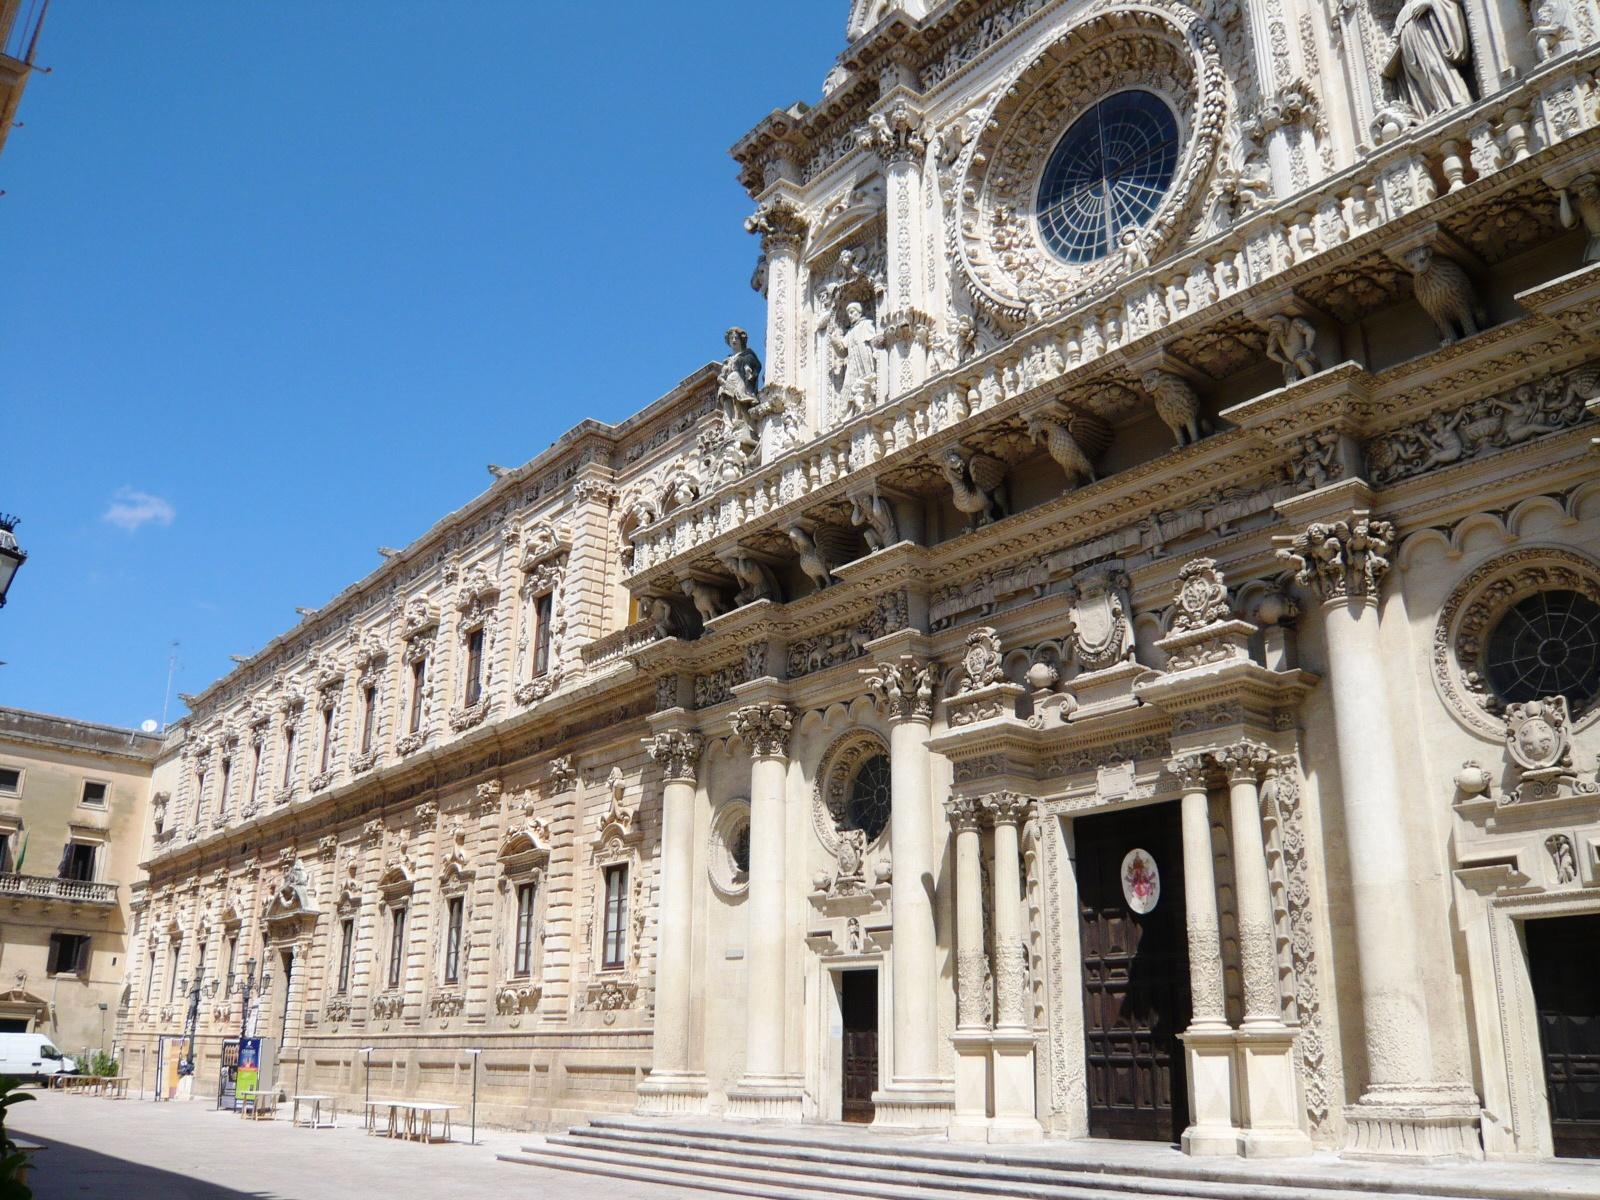 Basilica Santa Croce di Lecce - in stile Barocco